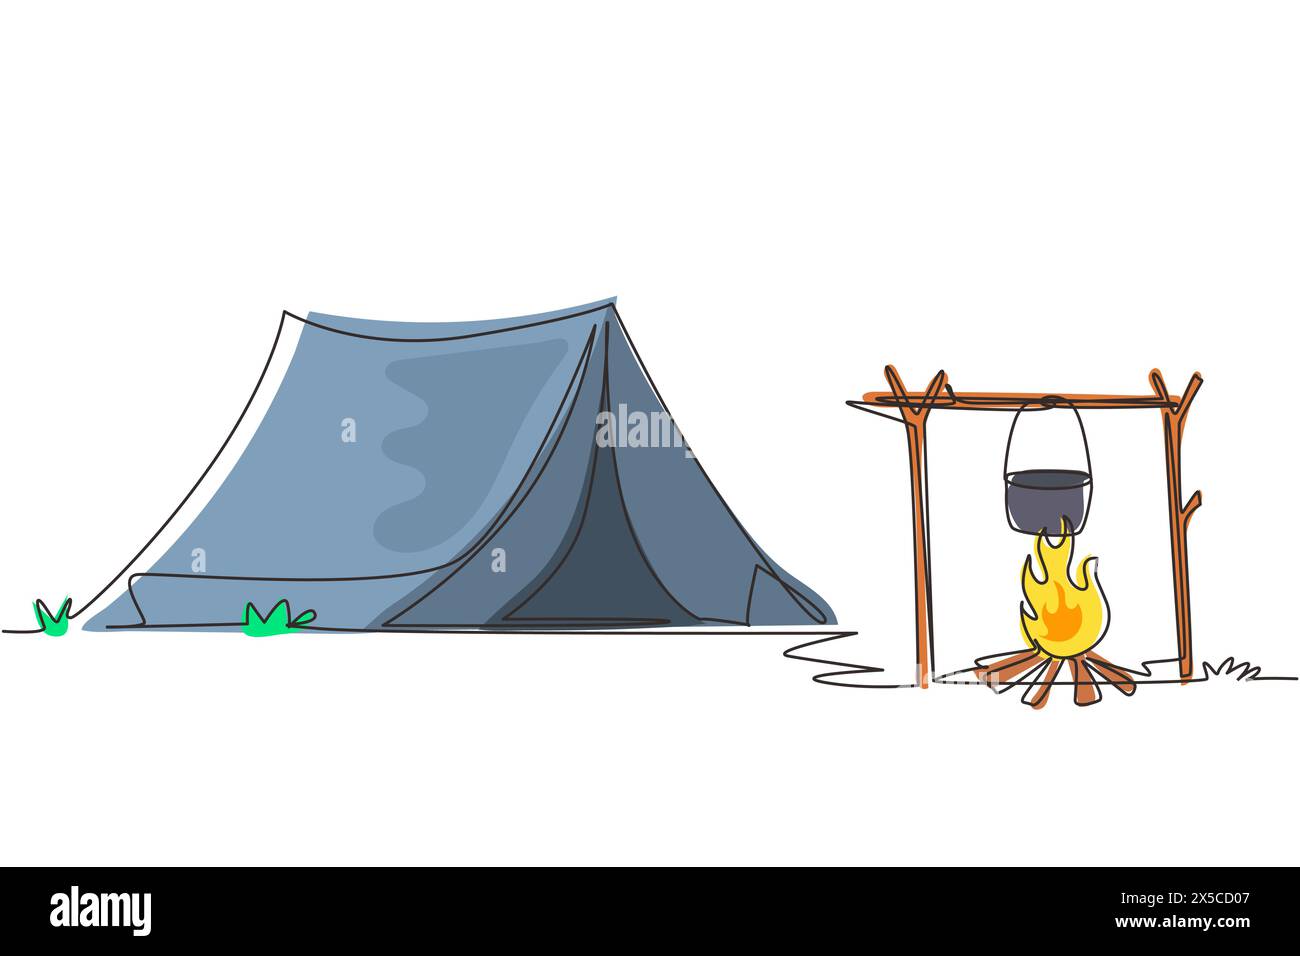 Site de camping dessinant une ligne continue unique avec feu de joie de tente et équipement de pot. Tente, feu de camp, forêt de pins et montagnes rocheuses. Aventures dans la nature Illustration de Vecteur